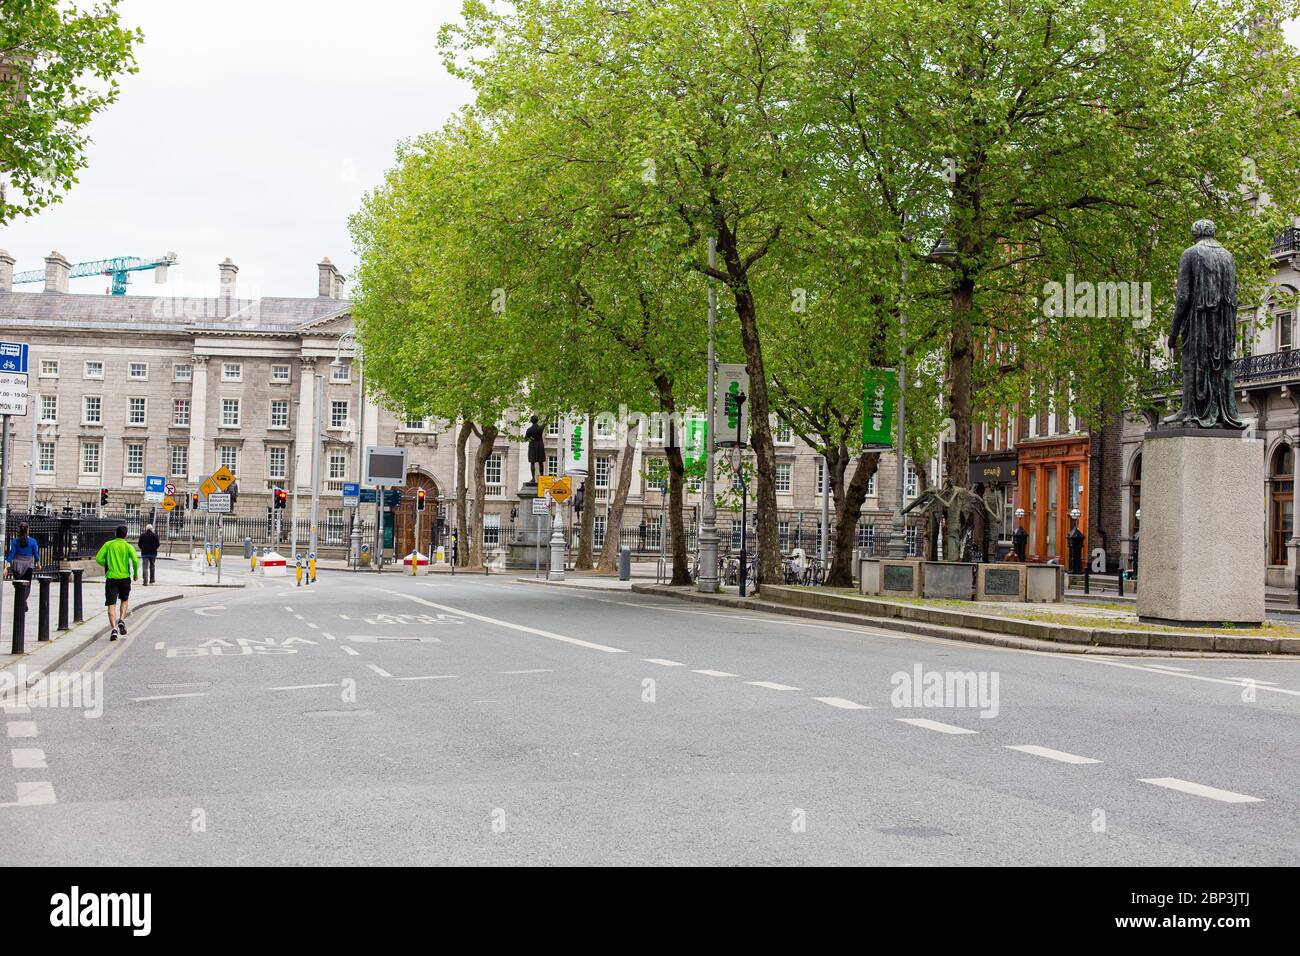 Leere Straße am College Green plaza im Stadtzentrum von Dublin. Verringerter Datenverkehr aufgrund von Einschränkungen bei der Coronavirus-Pandemie. Mai 2020, Dublin, Irland Stockfoto